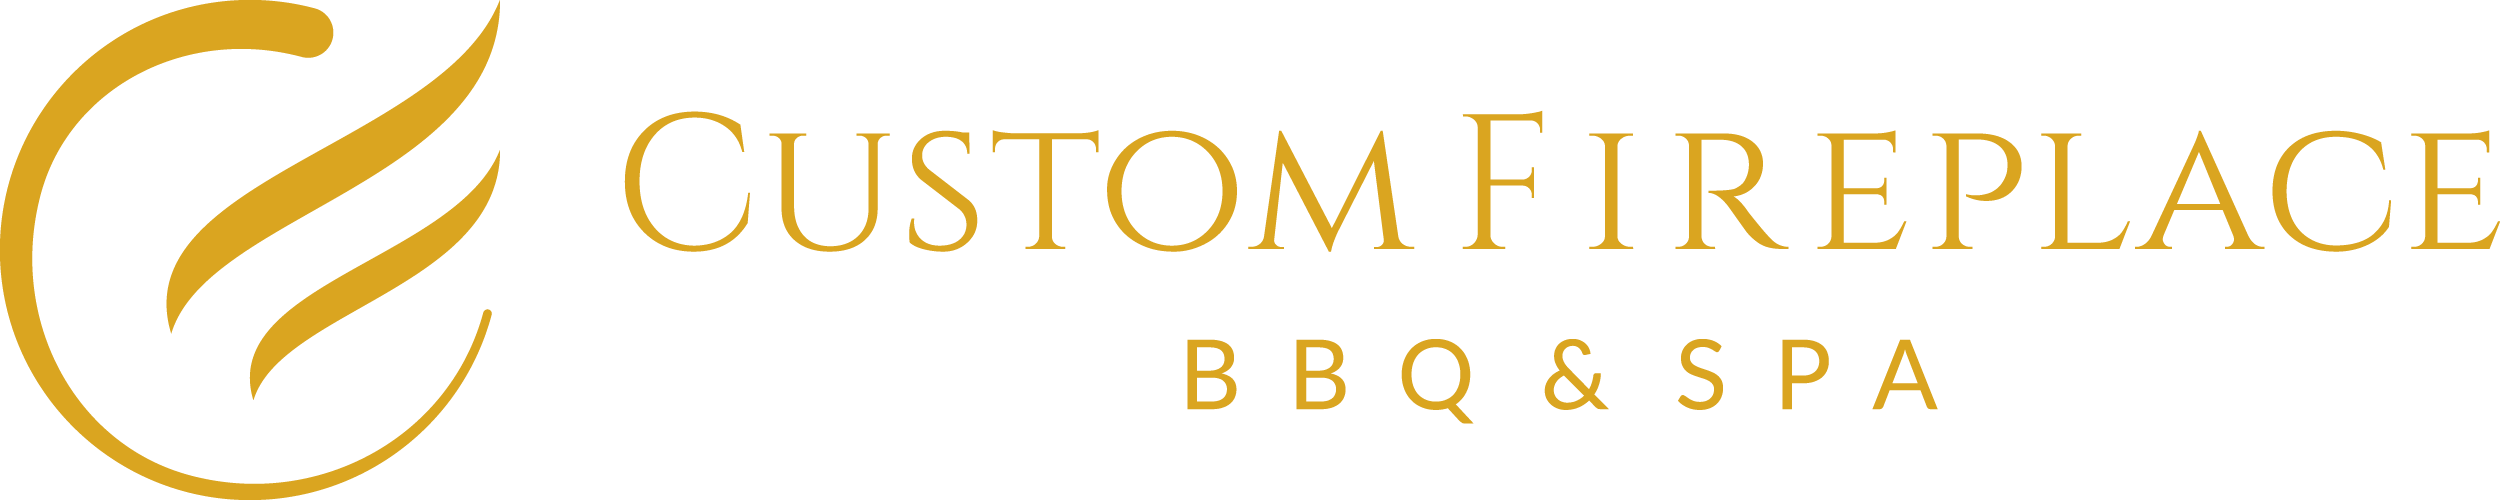 Custom Fireplace BBQ & Spa Logo